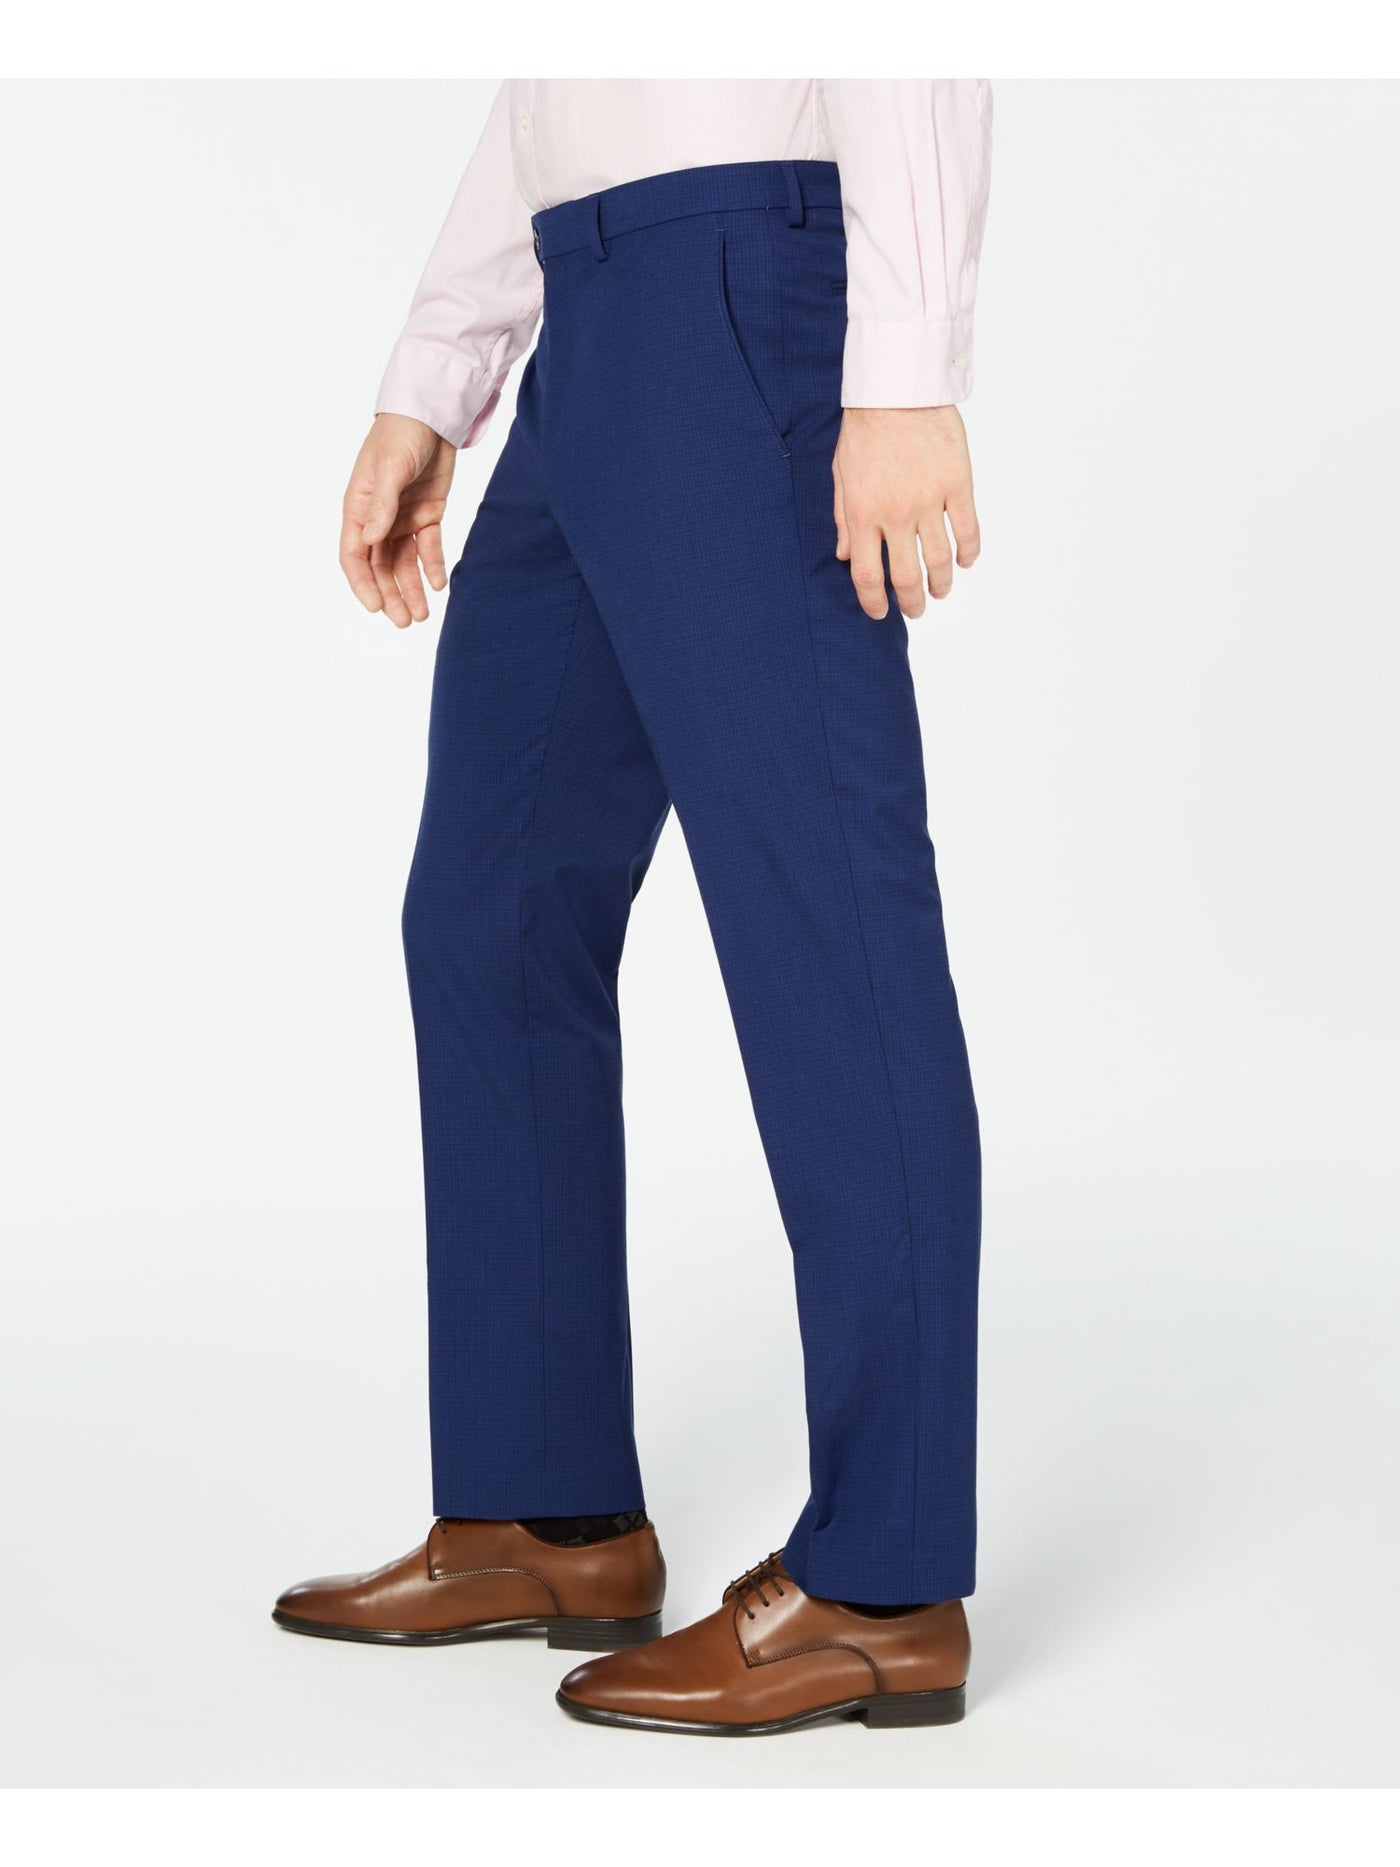 VINCE CAMUTO Mens Blue Flat Front, Slim Fit Pants W36/ L34